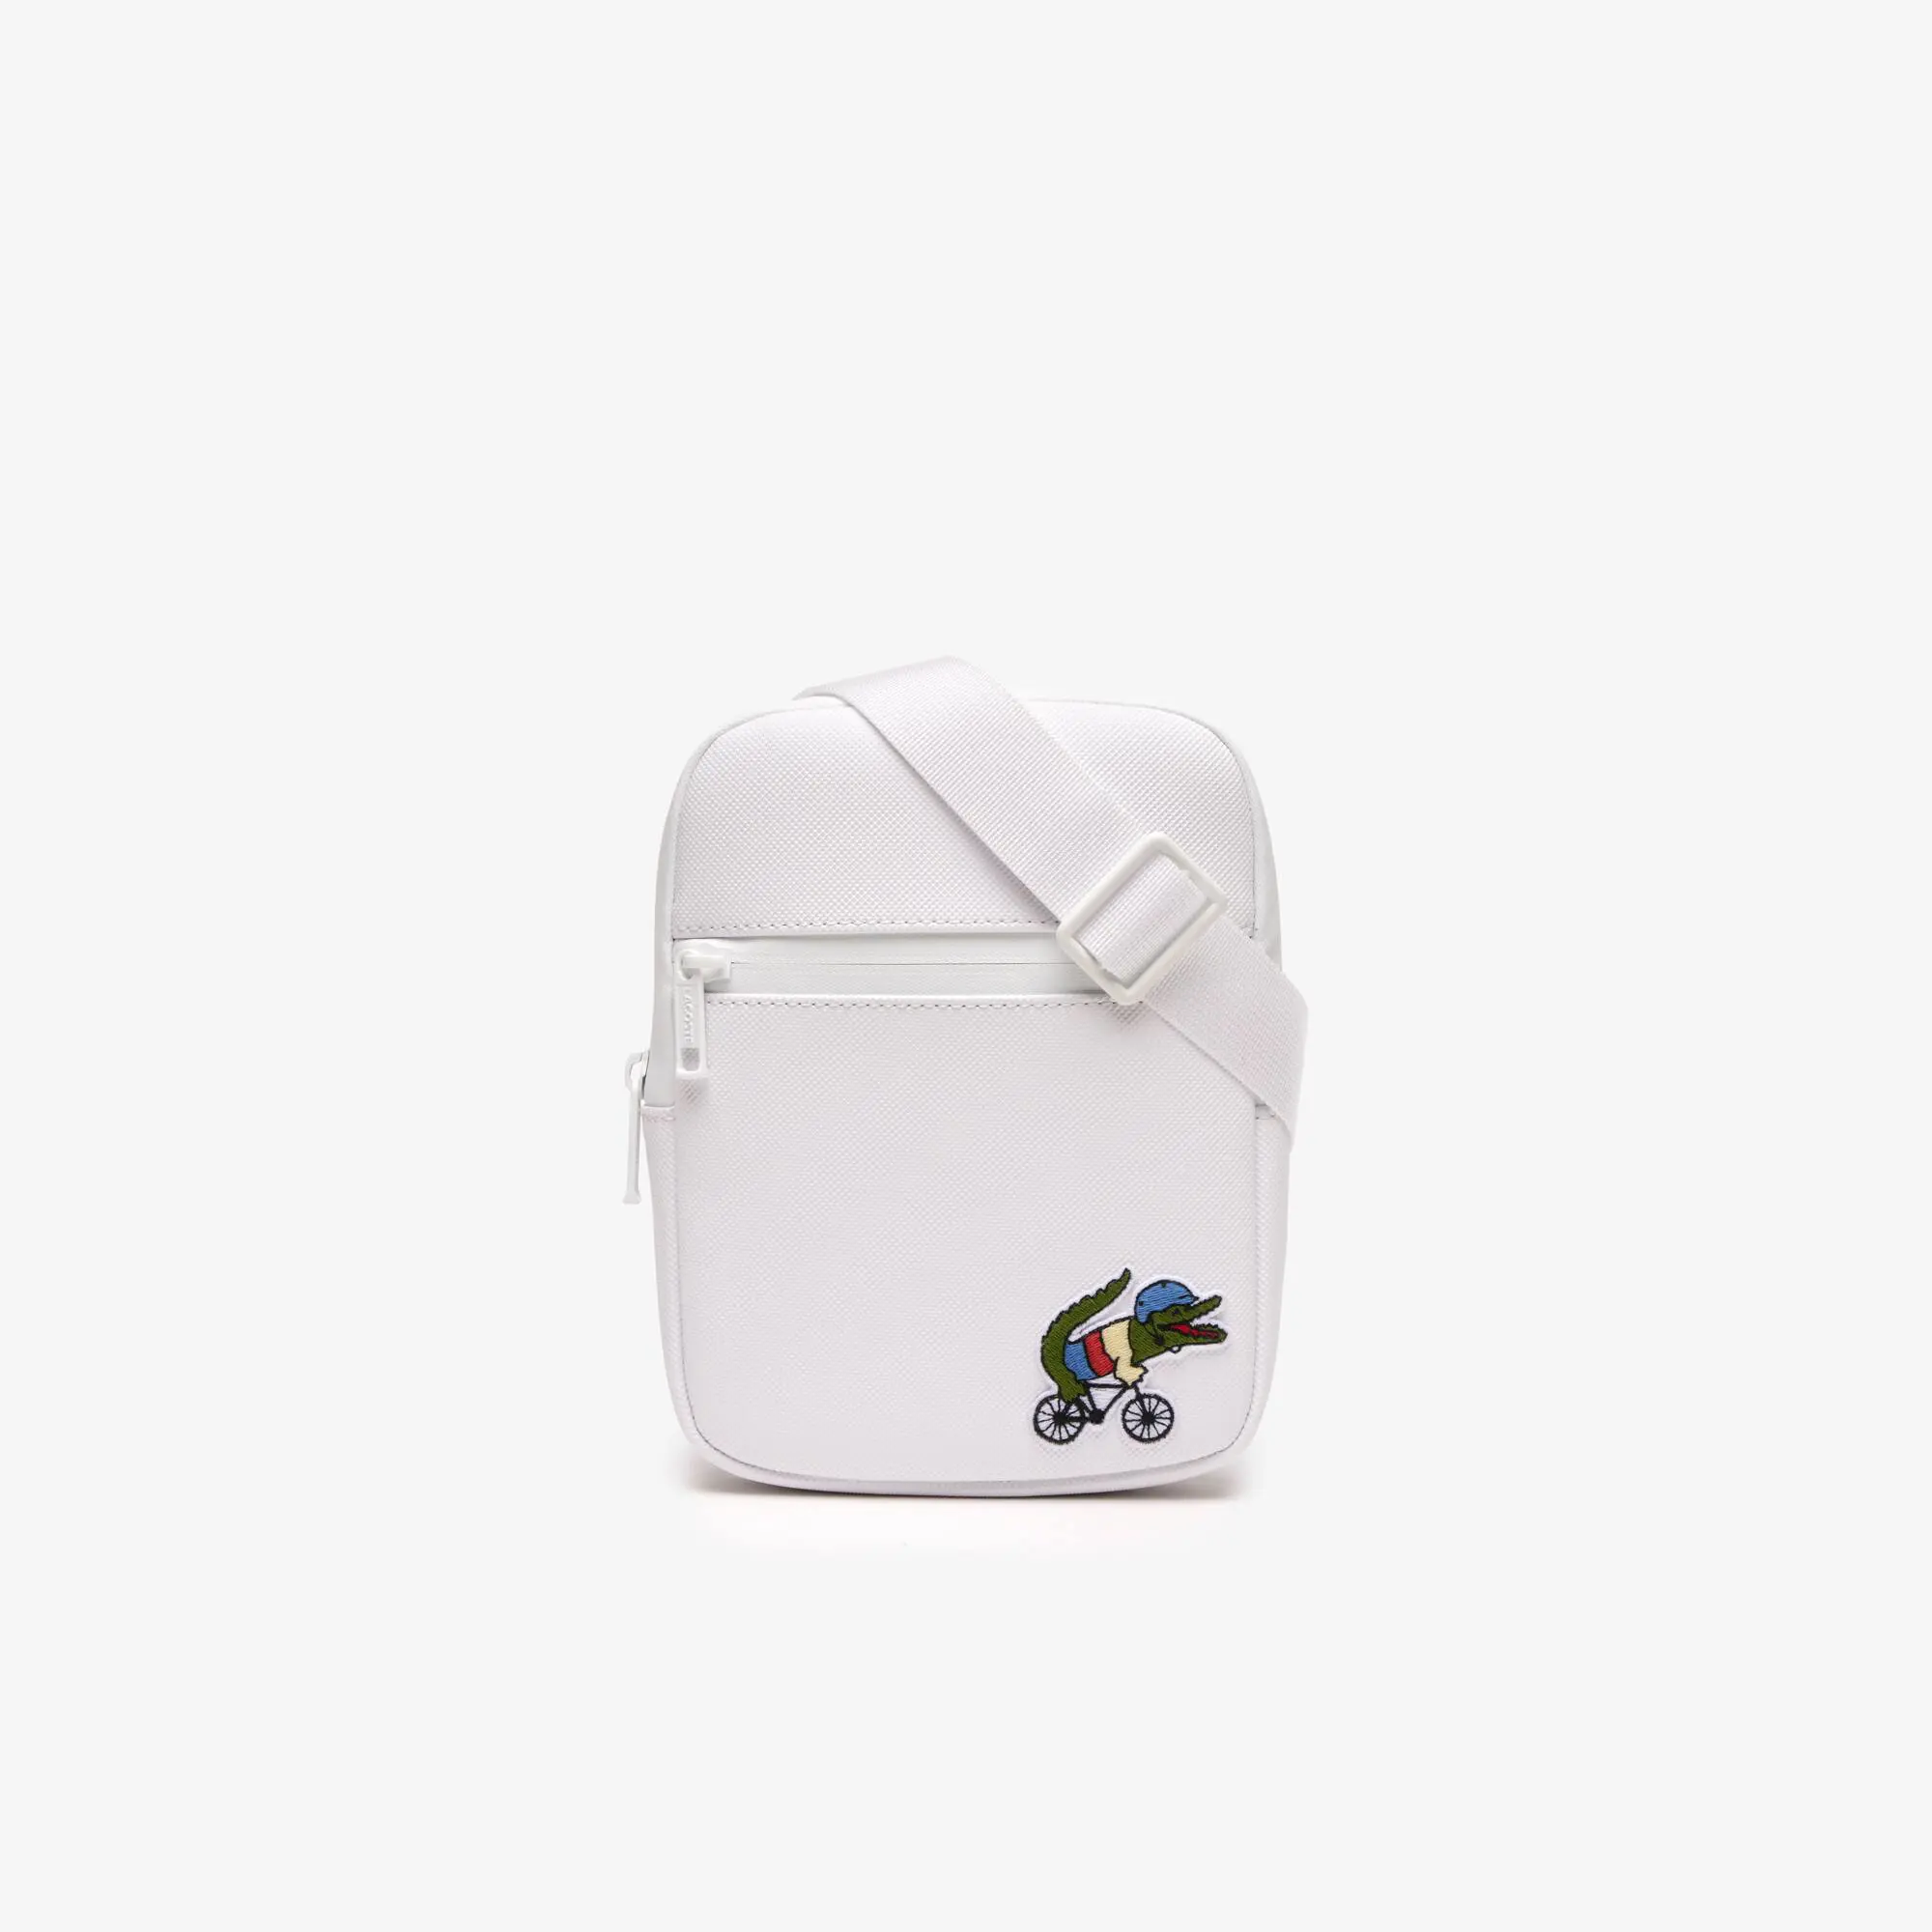 Lacoste Men’s Lacoste x Netflix Croc Print Shoulder Bag - Small. 1